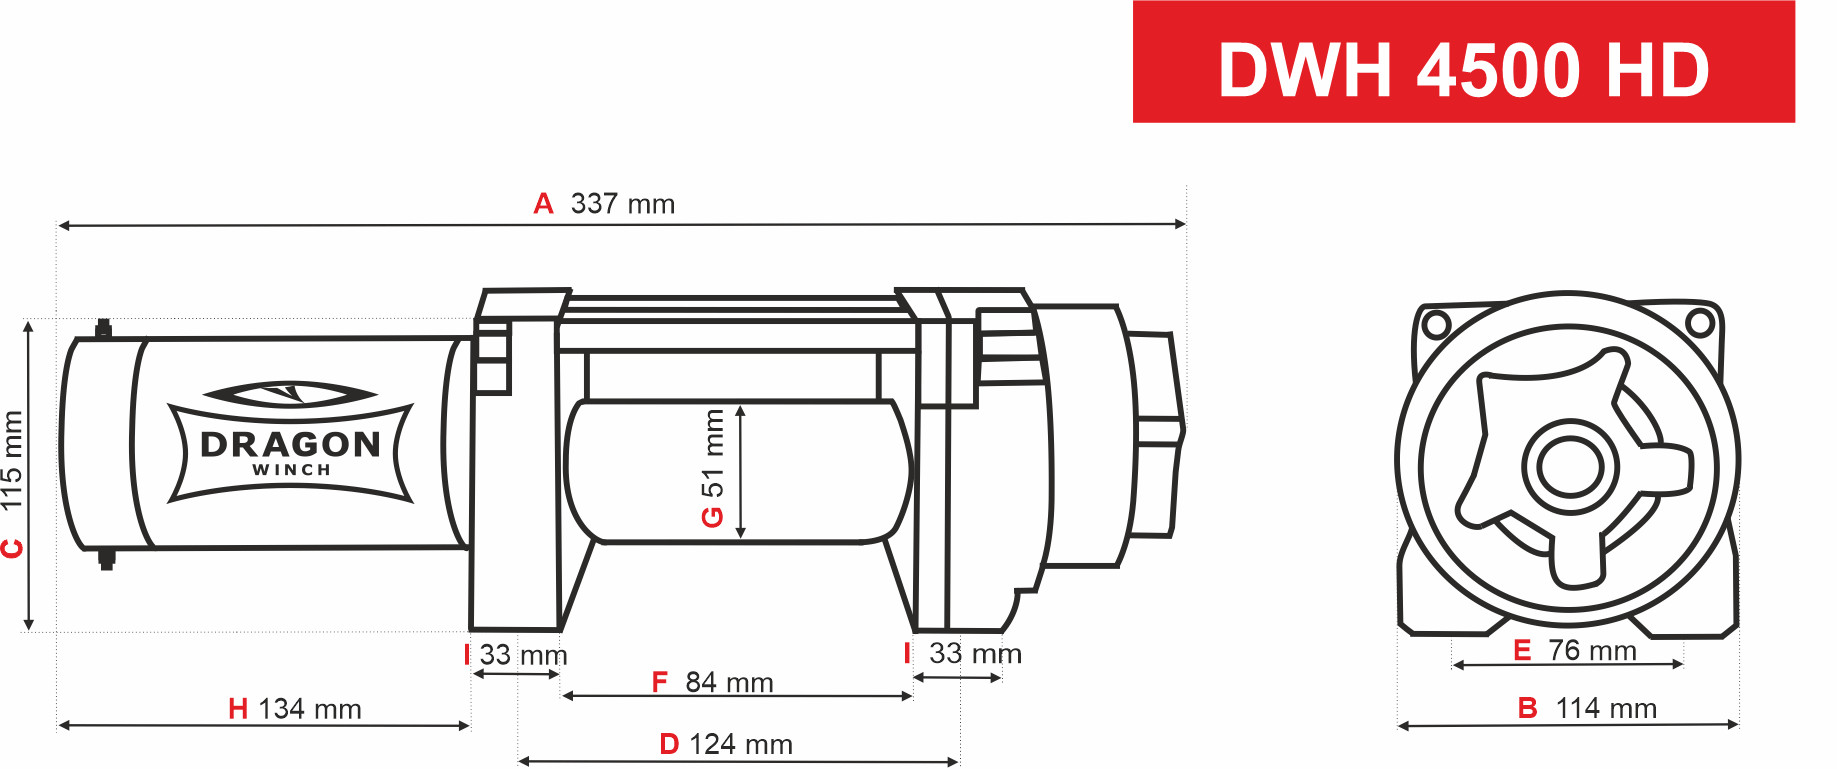 DWH 4500 HD - schemat 12